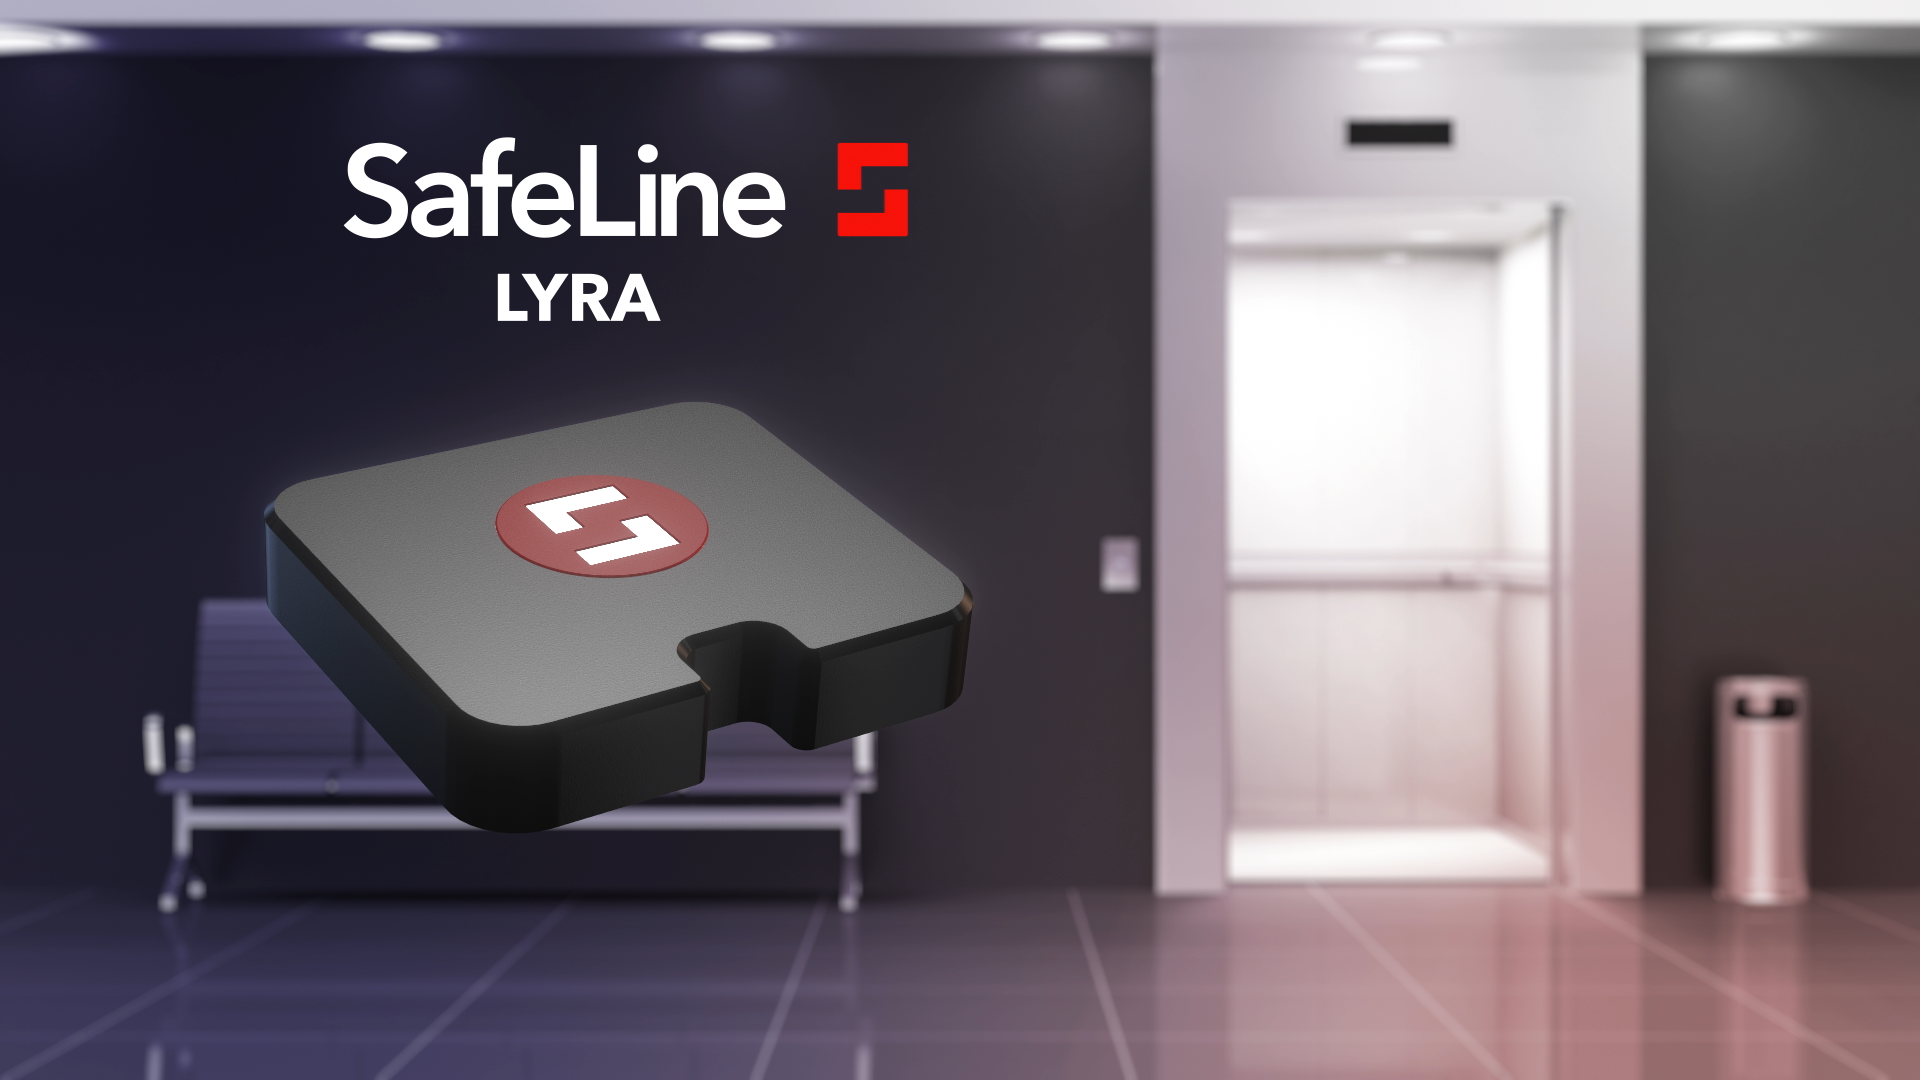 SafeLine LYRA